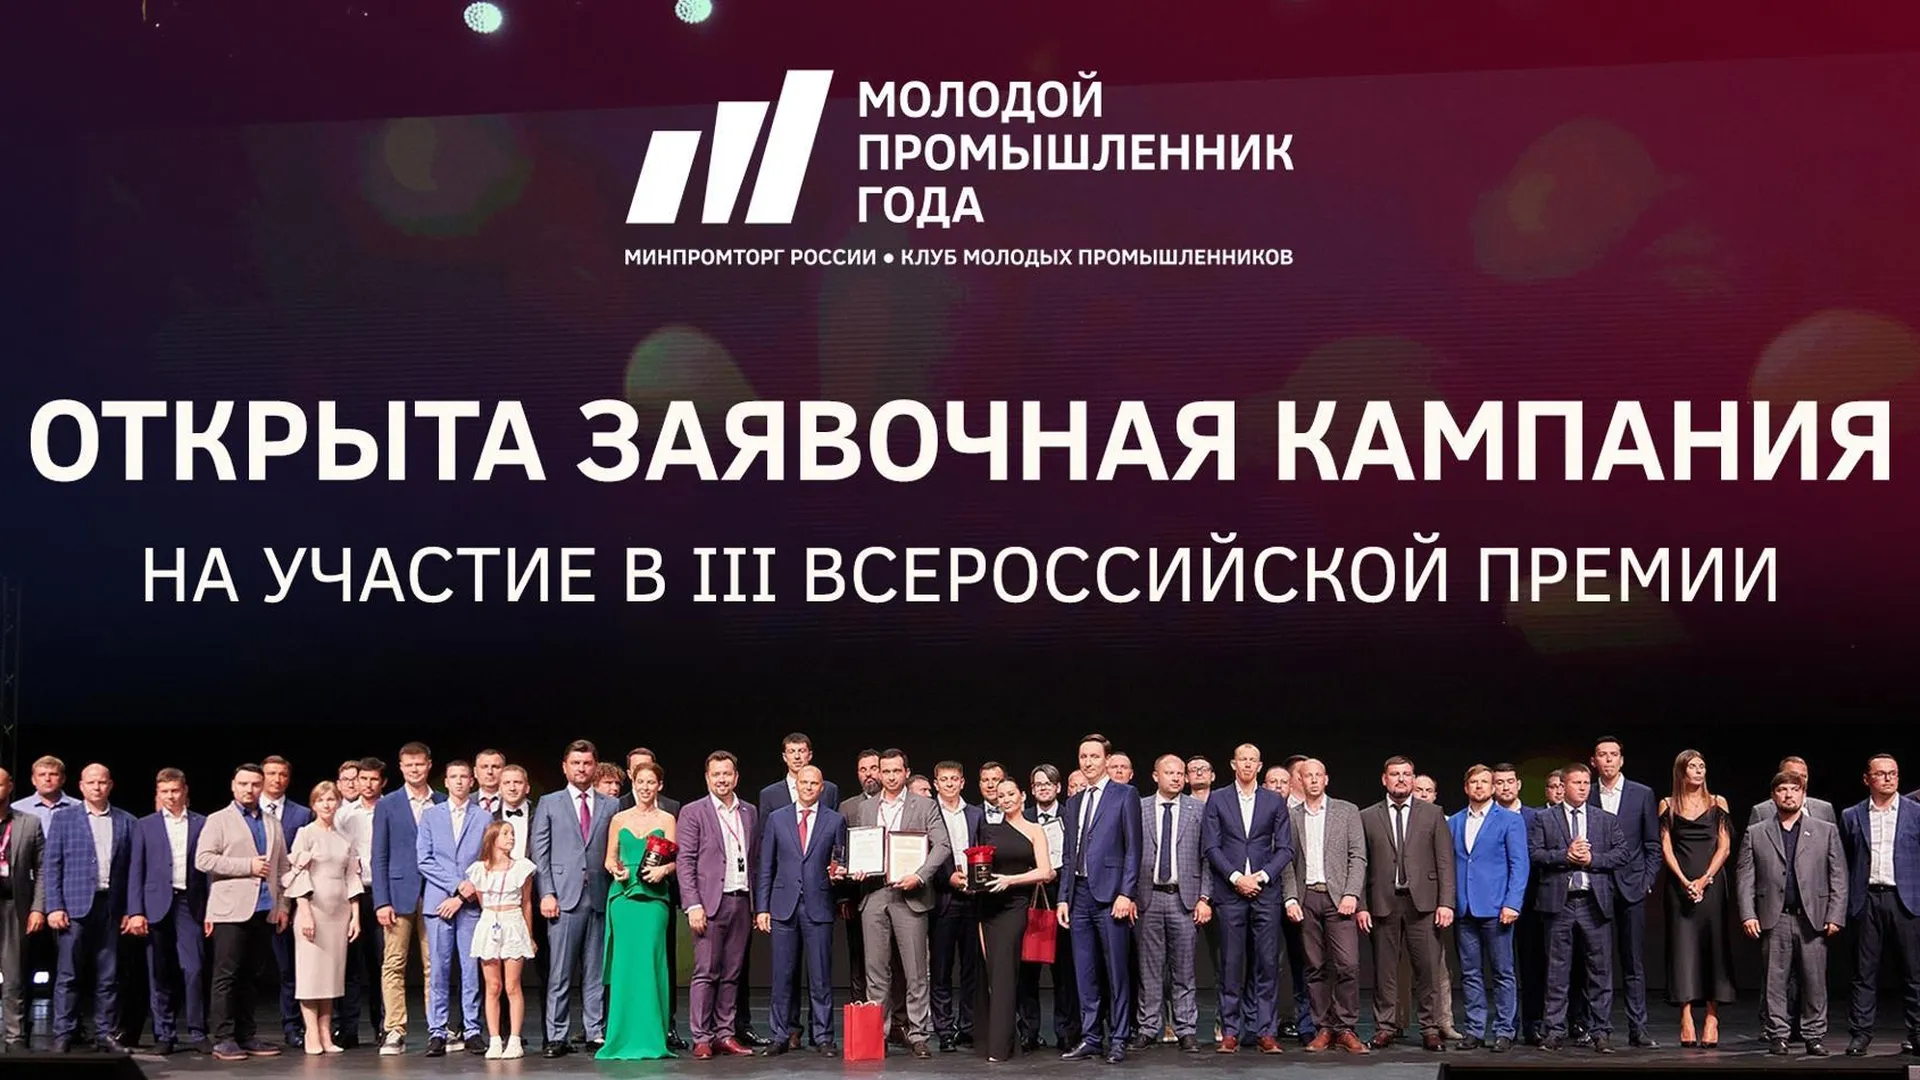 Предприниматели Городского округа Пушкинский приглашены к участию во всероссийском конкурсе